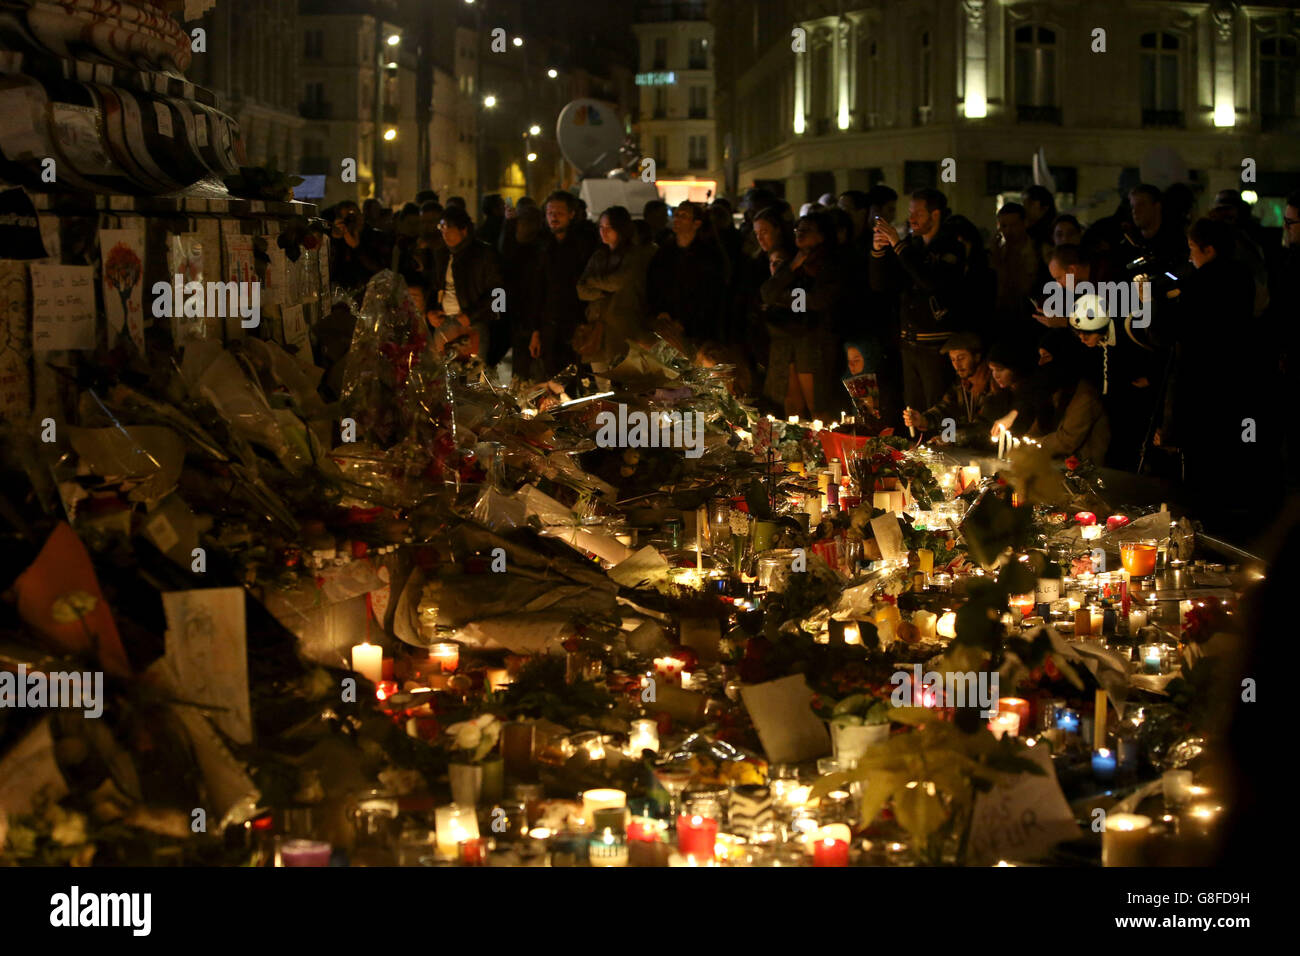 Les foules se rassemblent pour observer les hommages floraux et les bougies laissées à la place de la République, après les attaques terroristes de vendredi soir. Banque D'Images